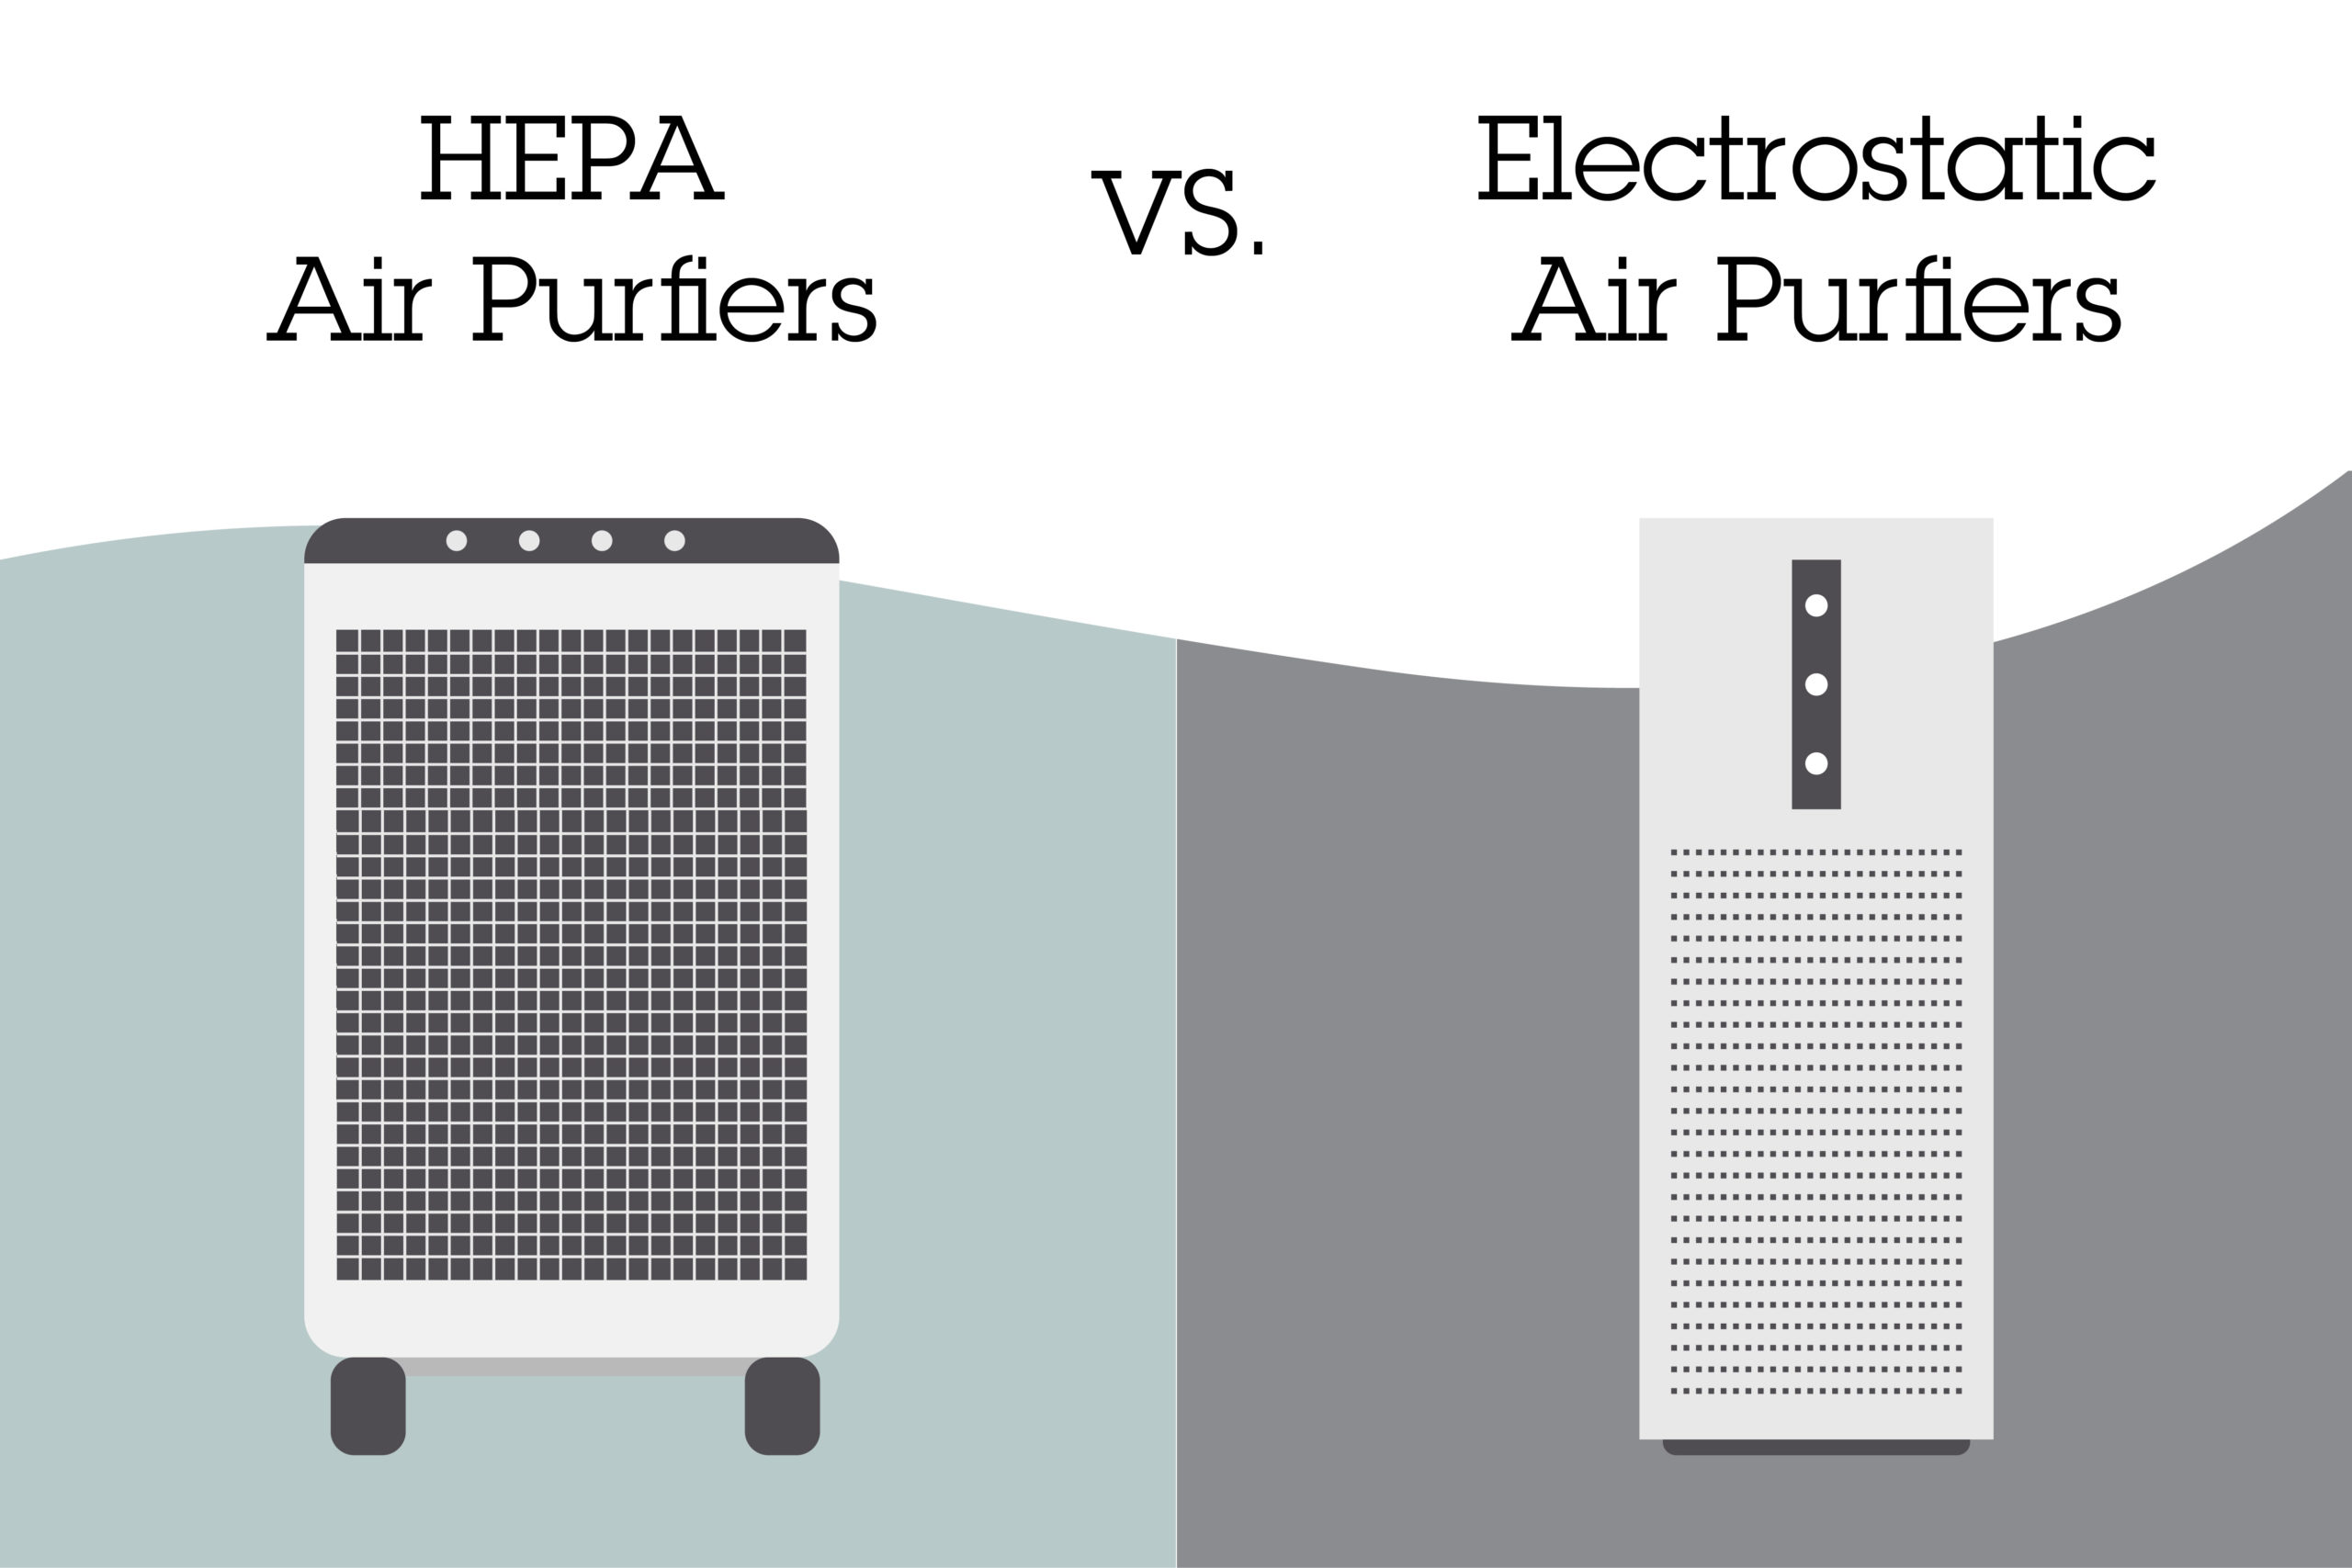 Hepa vs. Electrostatic